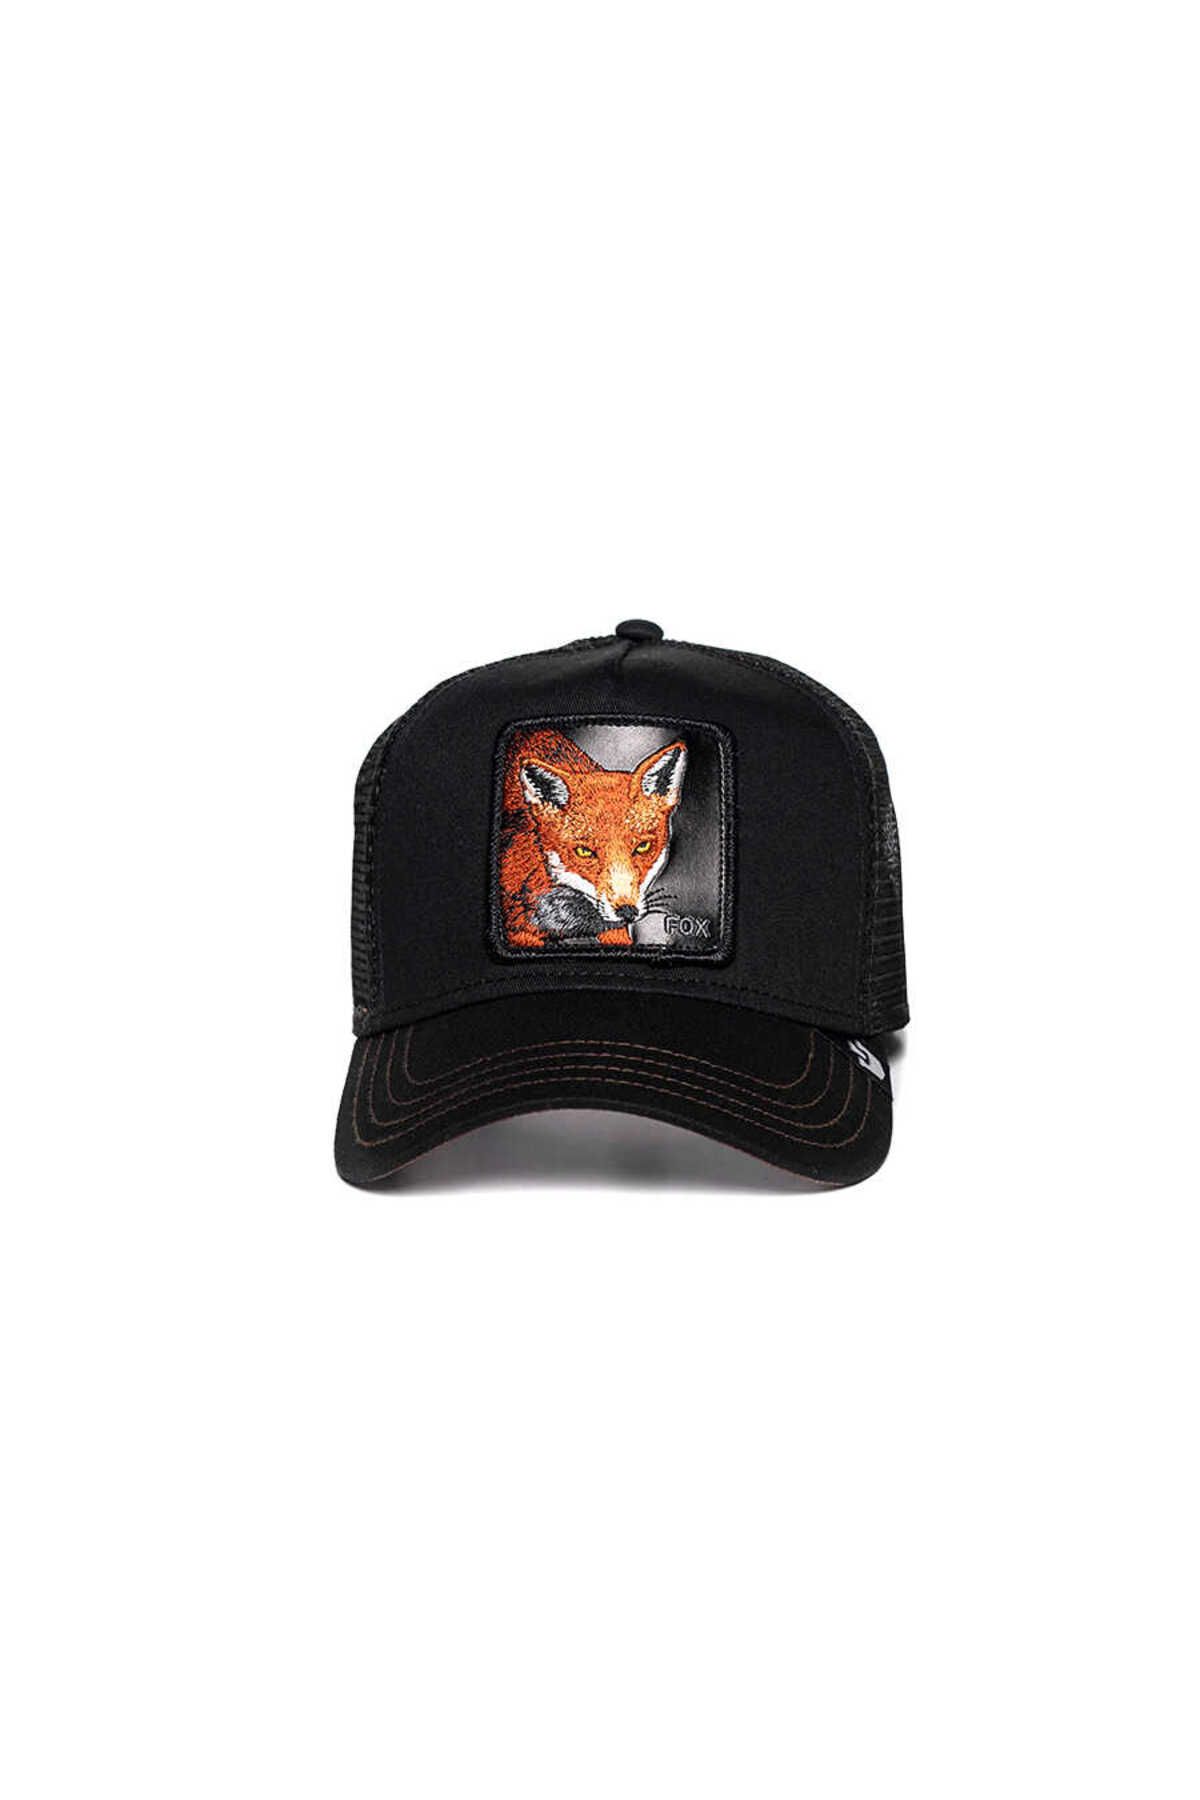 Goorin Bros . The Fox ( Tilki Figürlü ) Şapka 101-0528 Kahverengi Standart